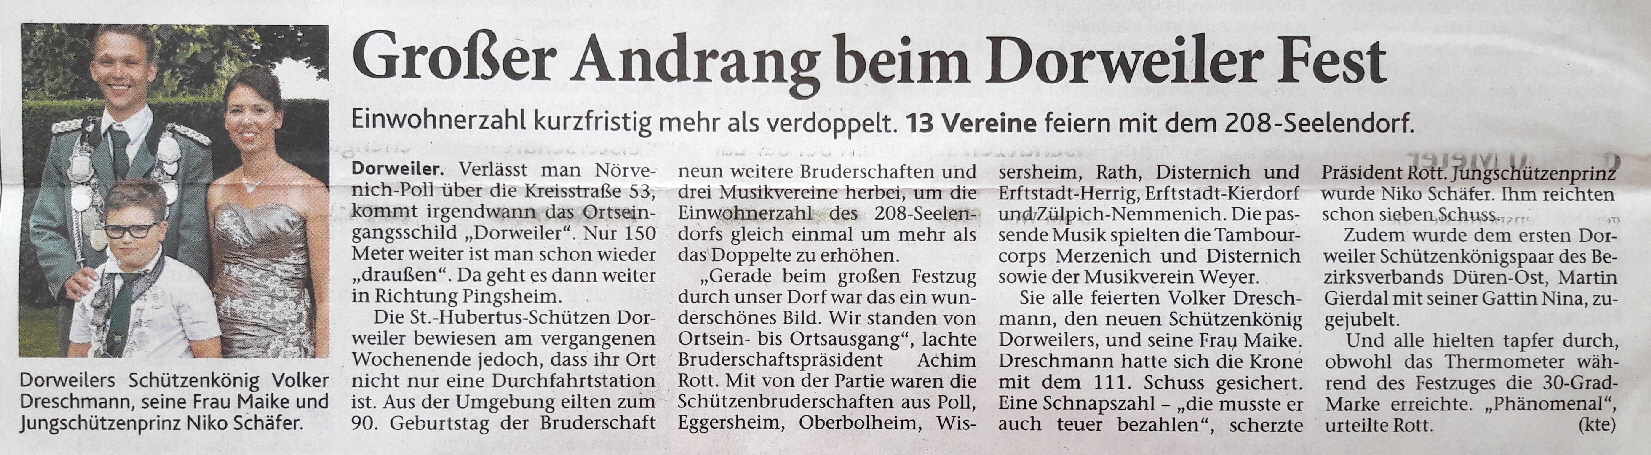 Dürener Zeitung 14-07-2017 gross